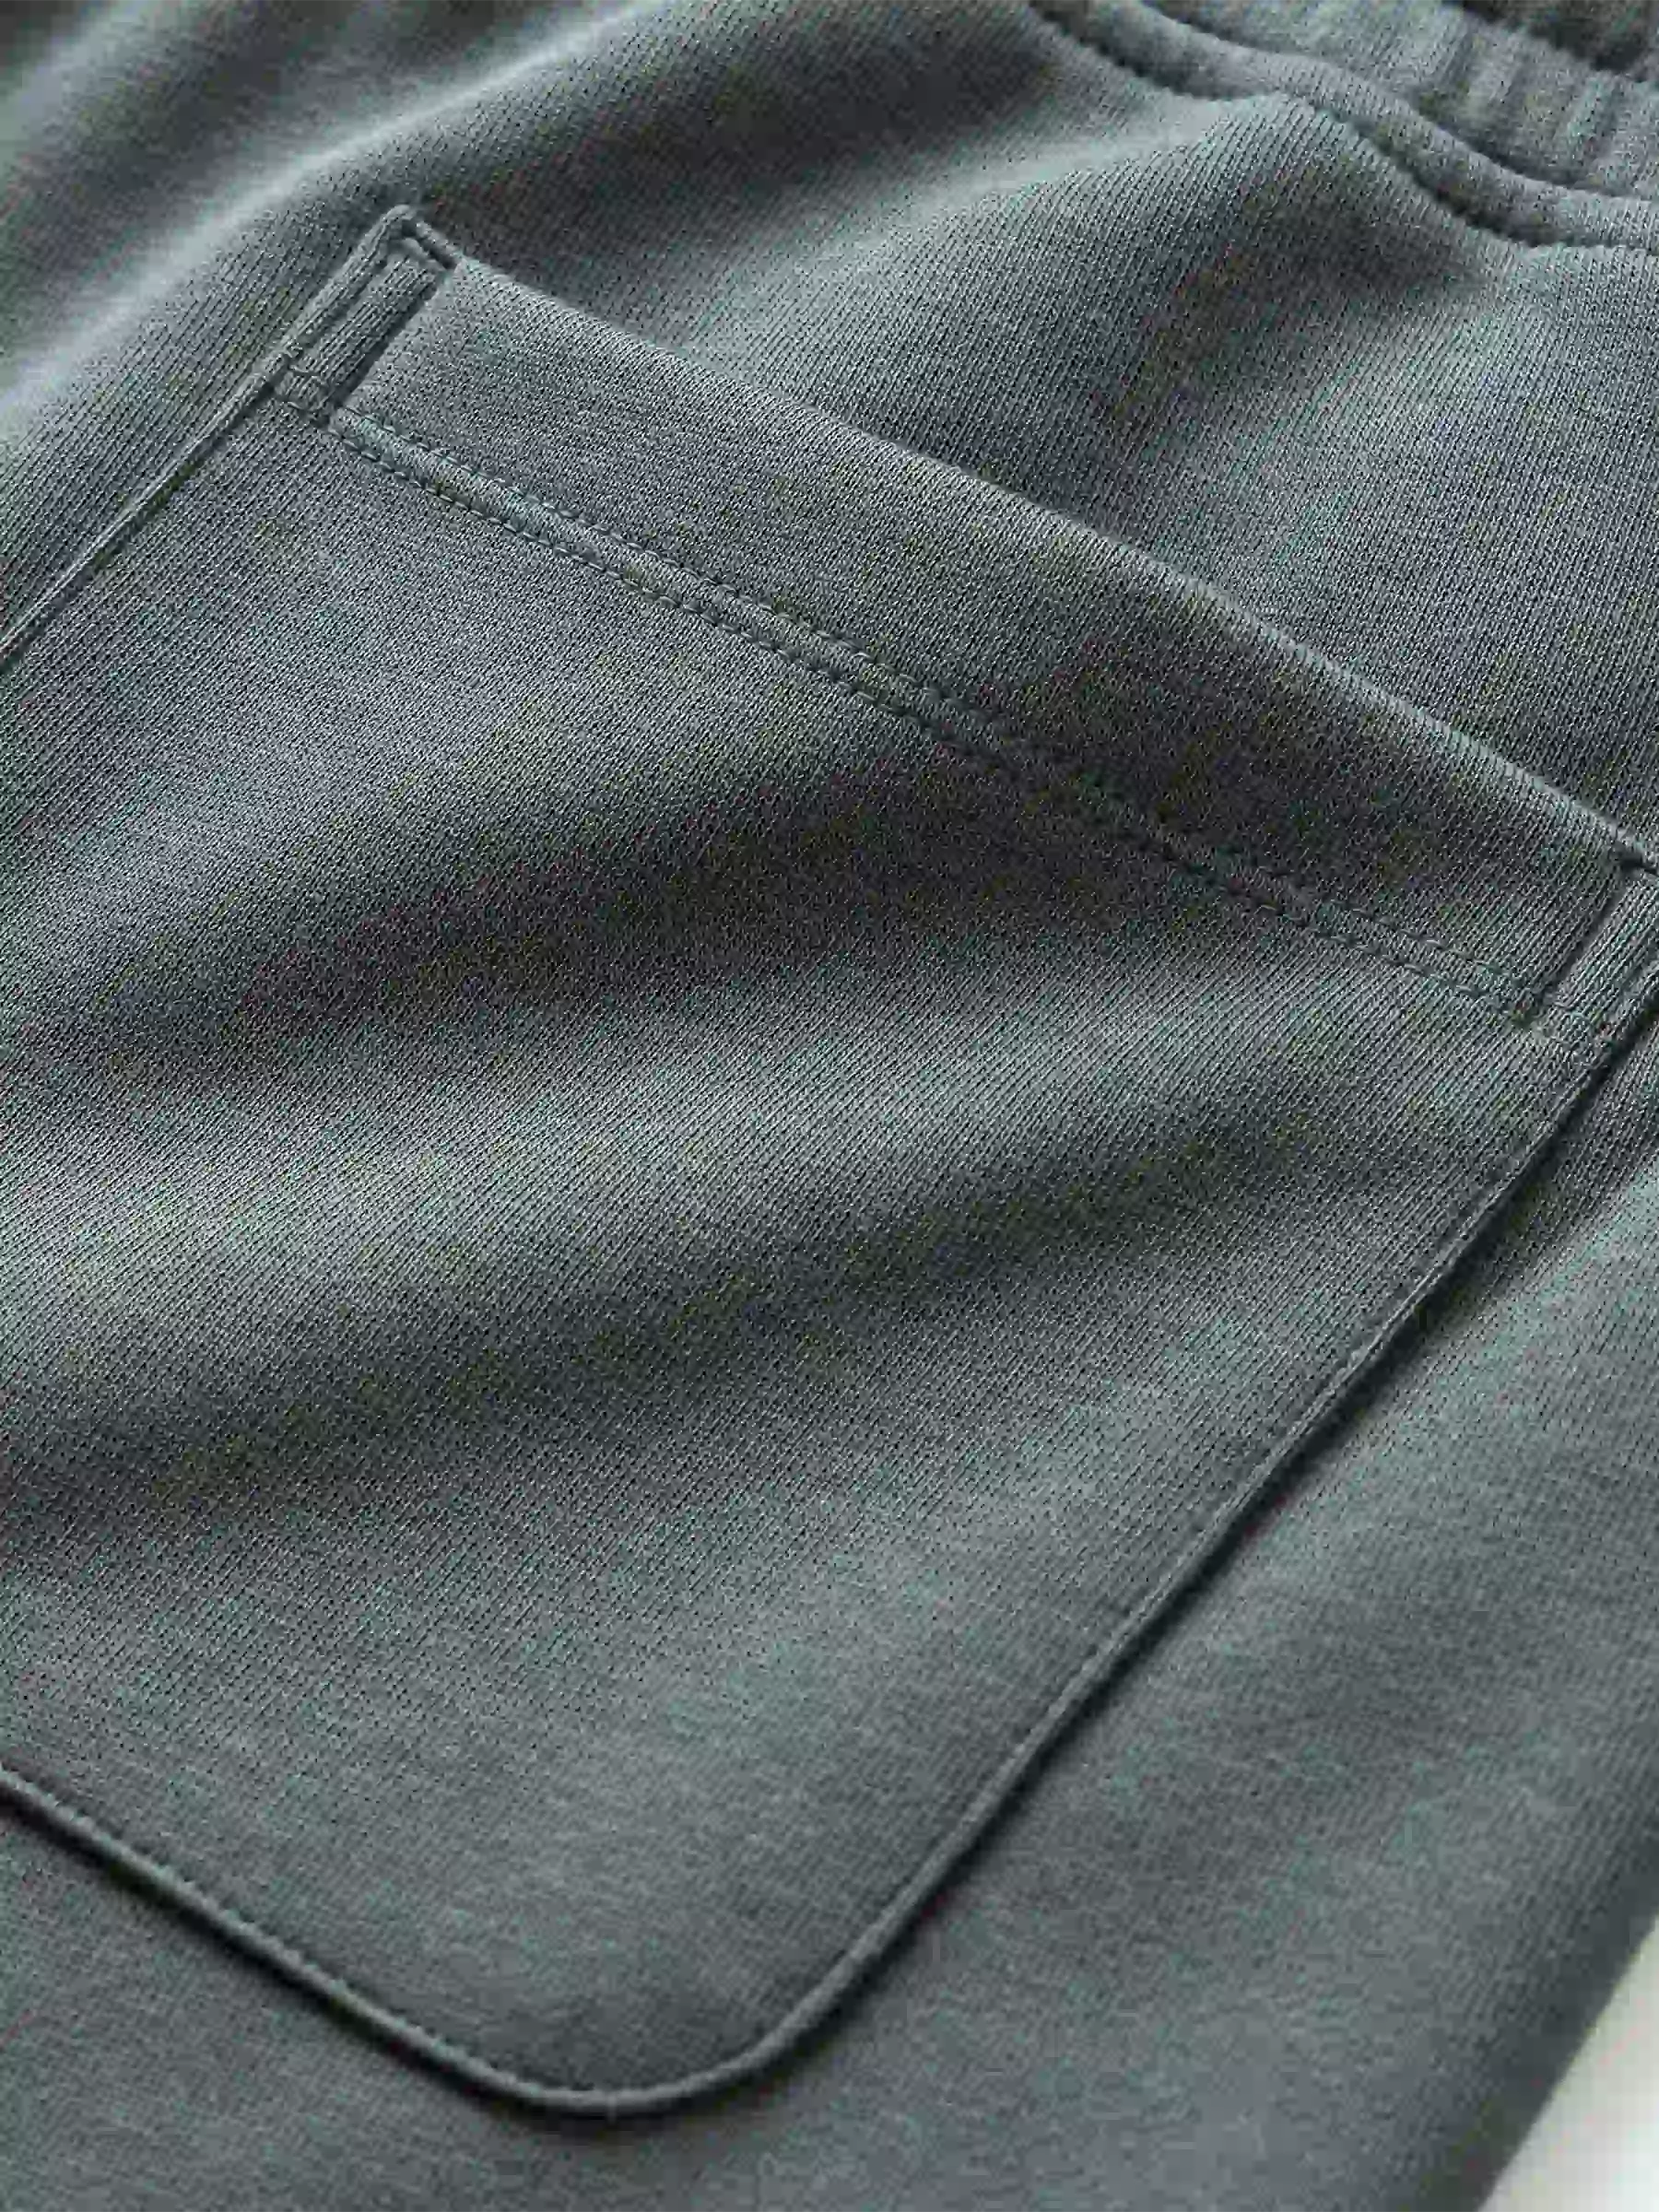 Chi tiết quần Short Casual 5S Fashion Cạp Chun QSC24017